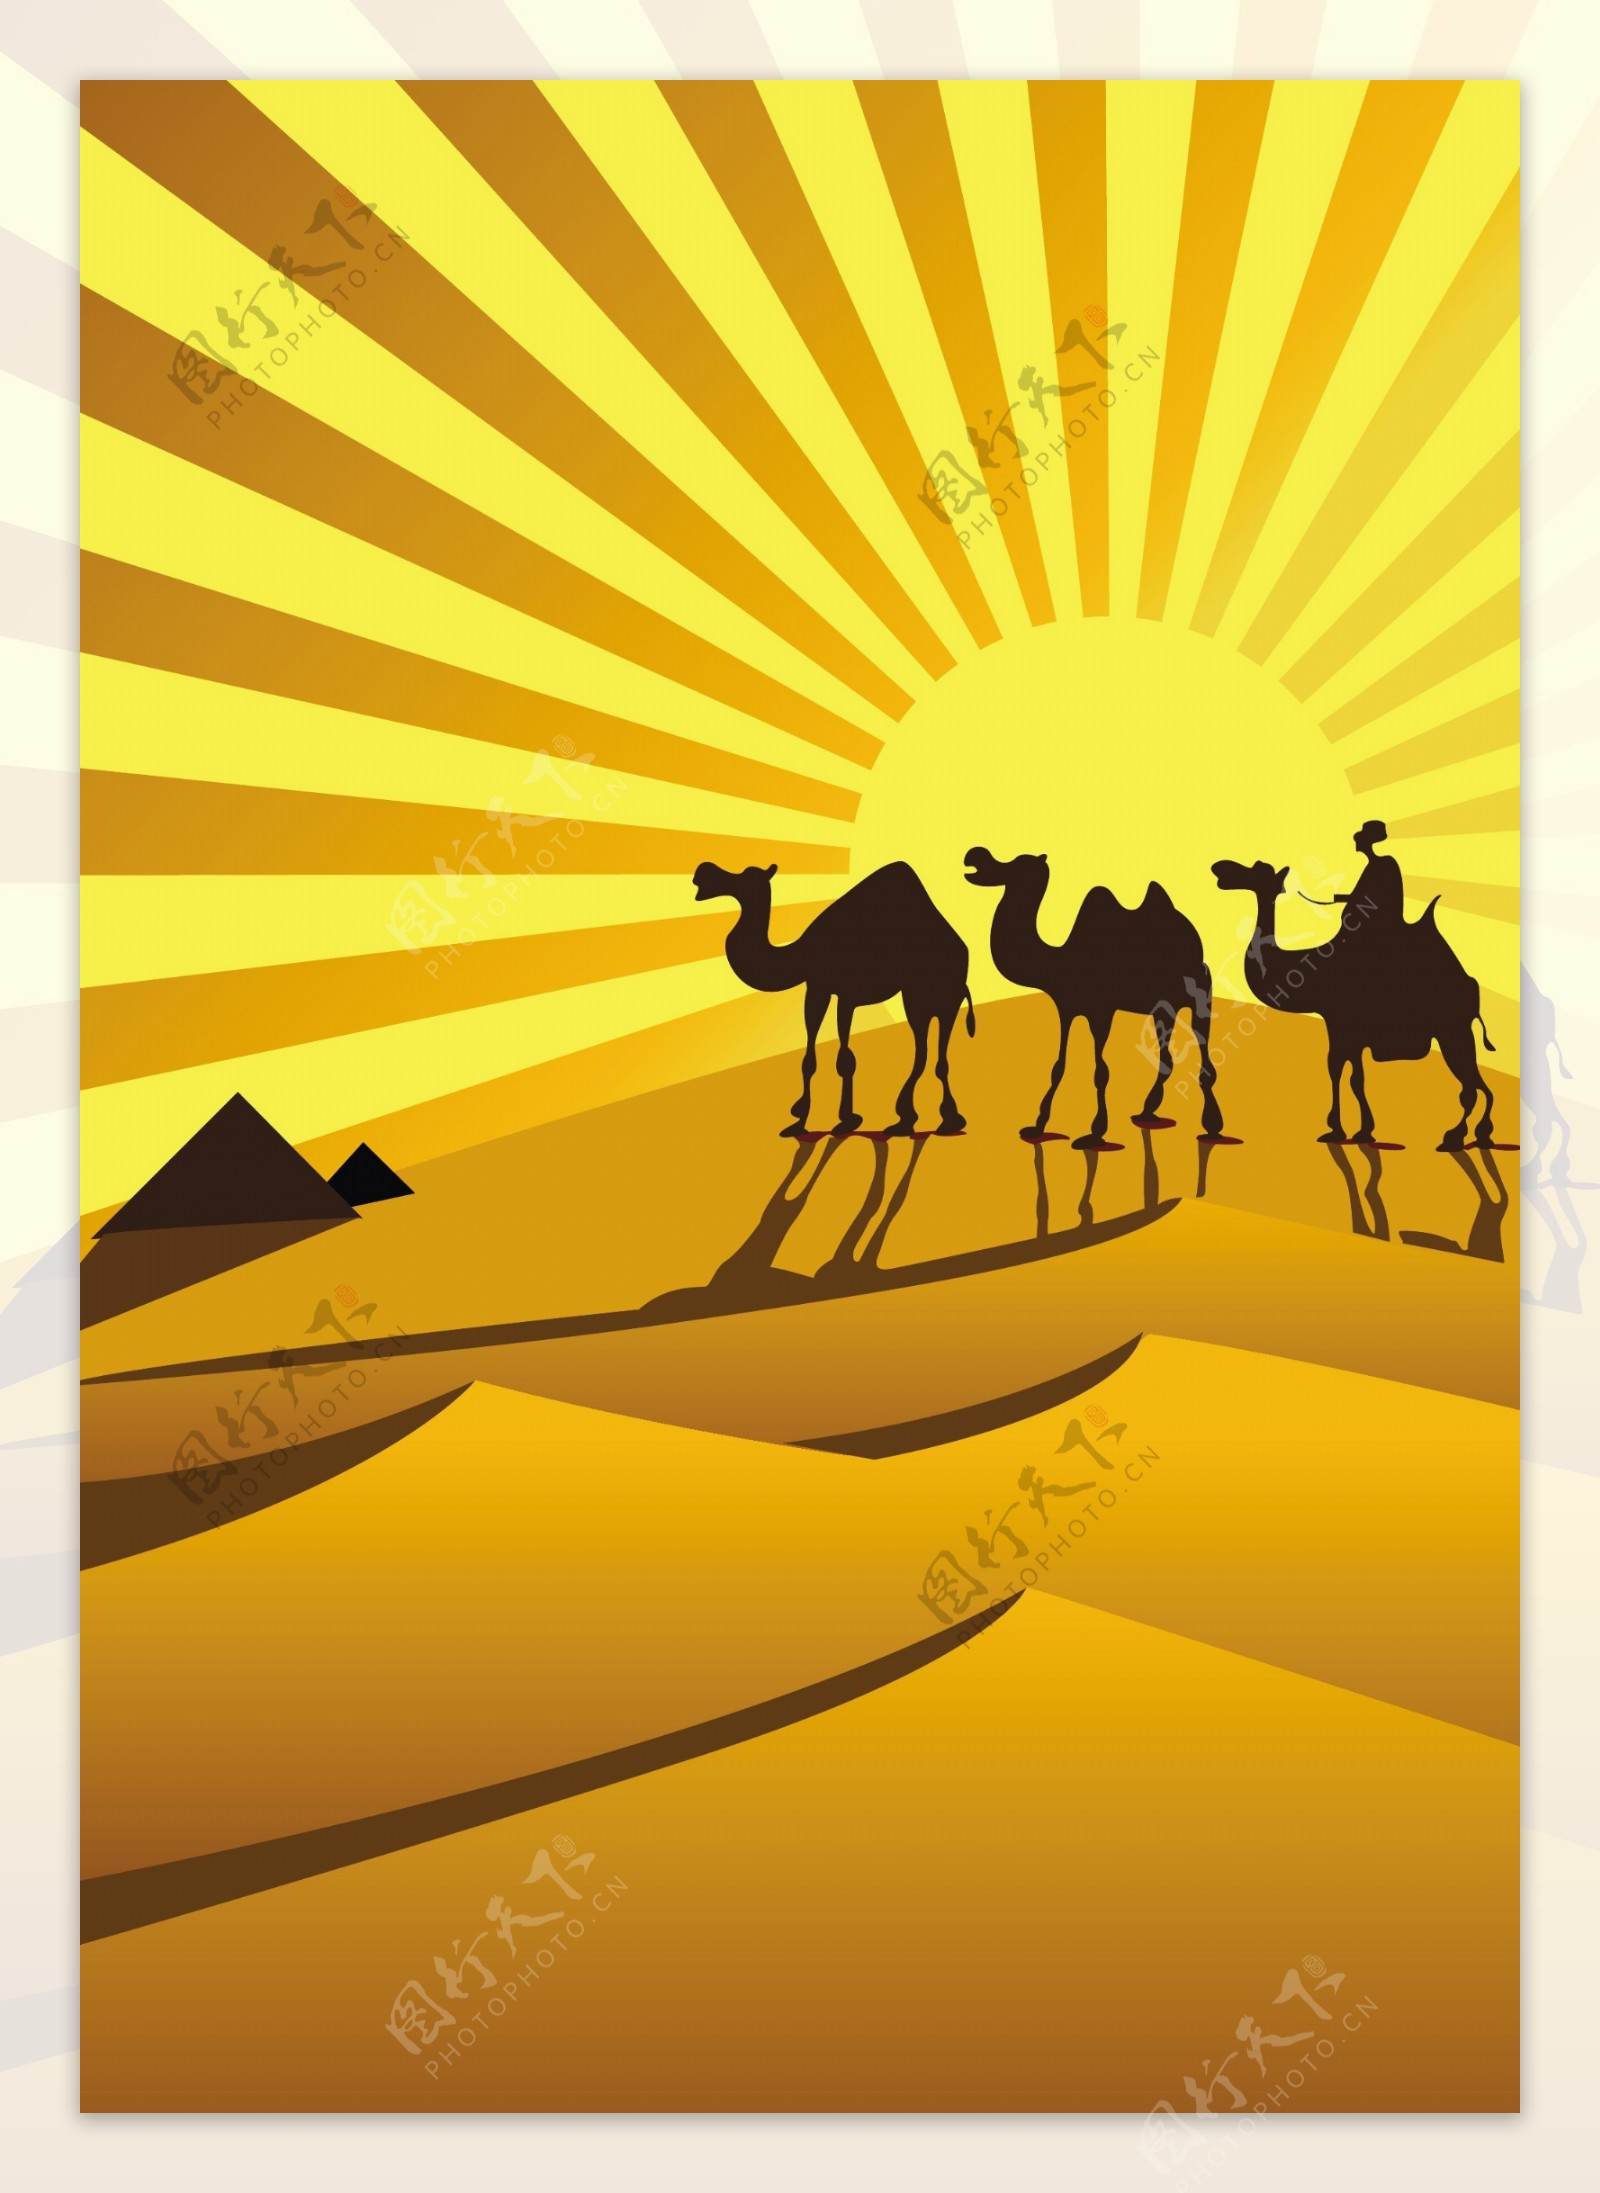 在金色的沙漠骆驼剪影矢量素材